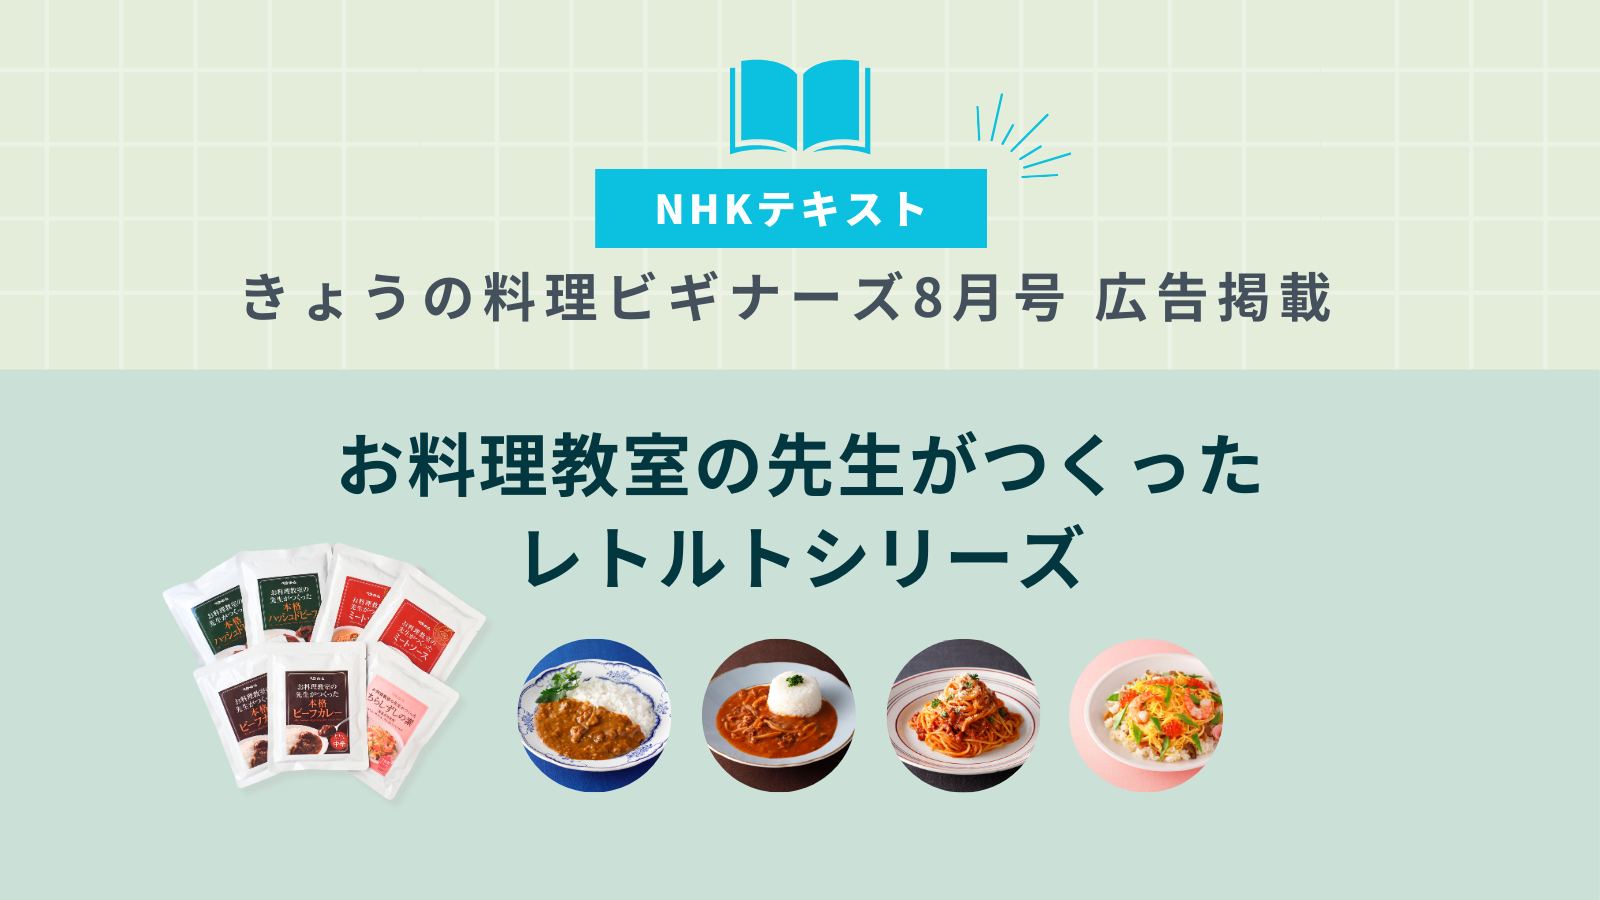 ［NHKテキストきょうの料理ビギナーズ 8月号 広告掲載］お料理教室の先生がつくったレトルトシリーズイメージ画像です